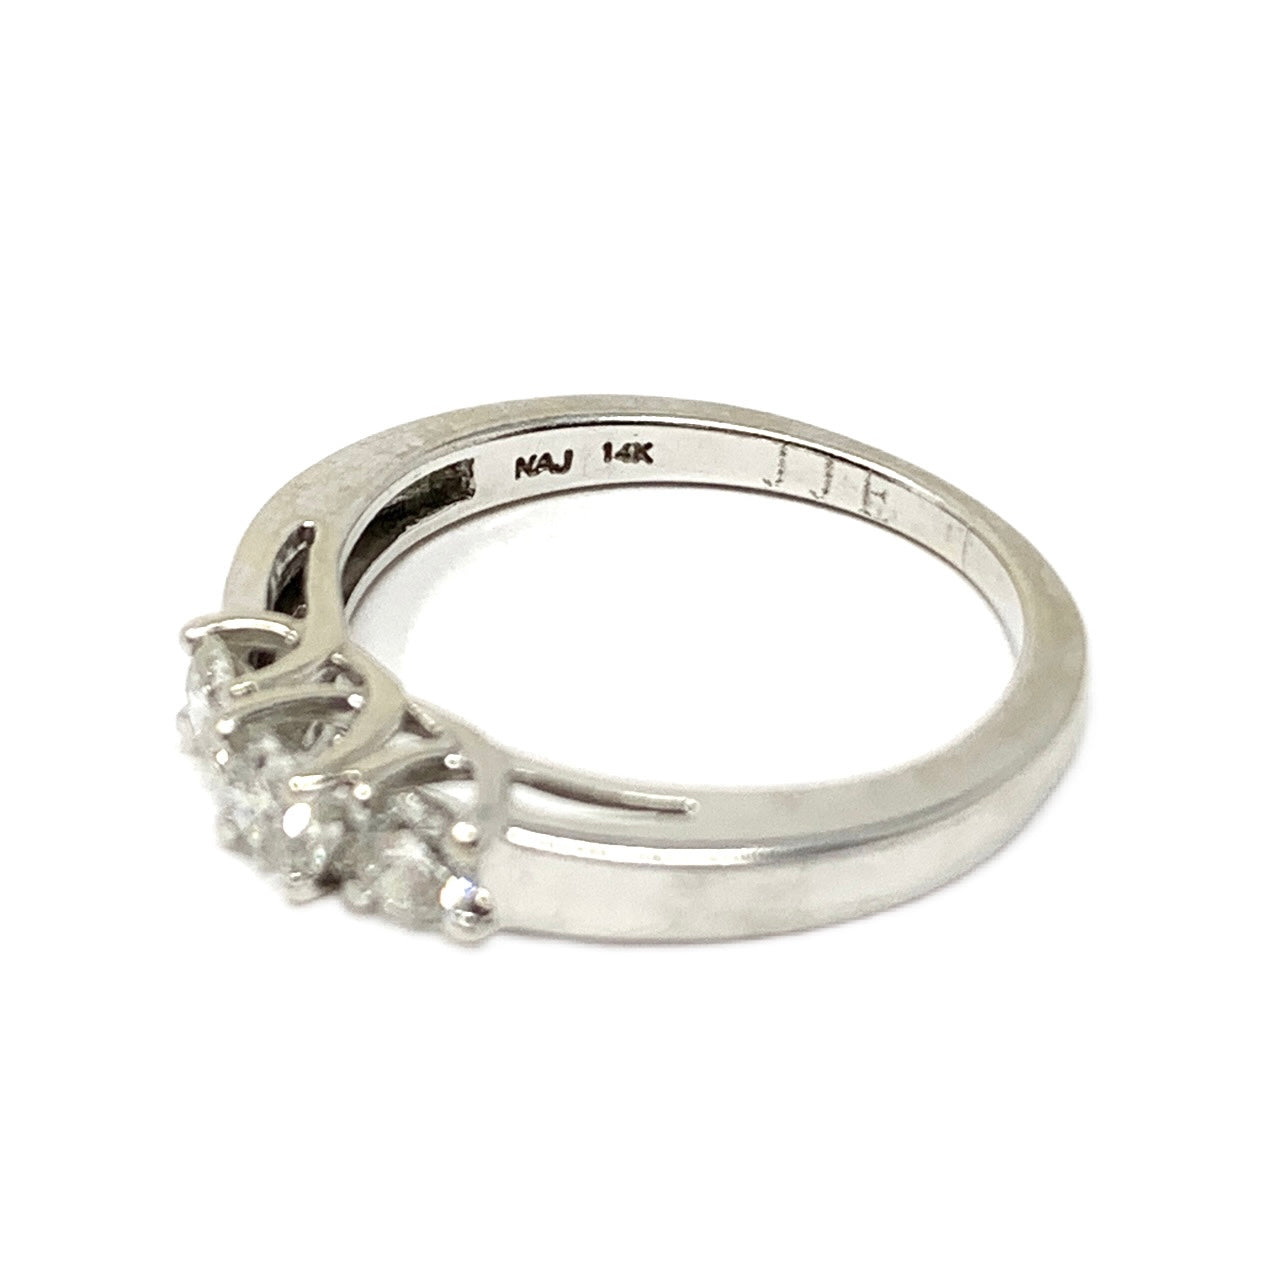 14K White Gold 3 Diamond Engagement Ring